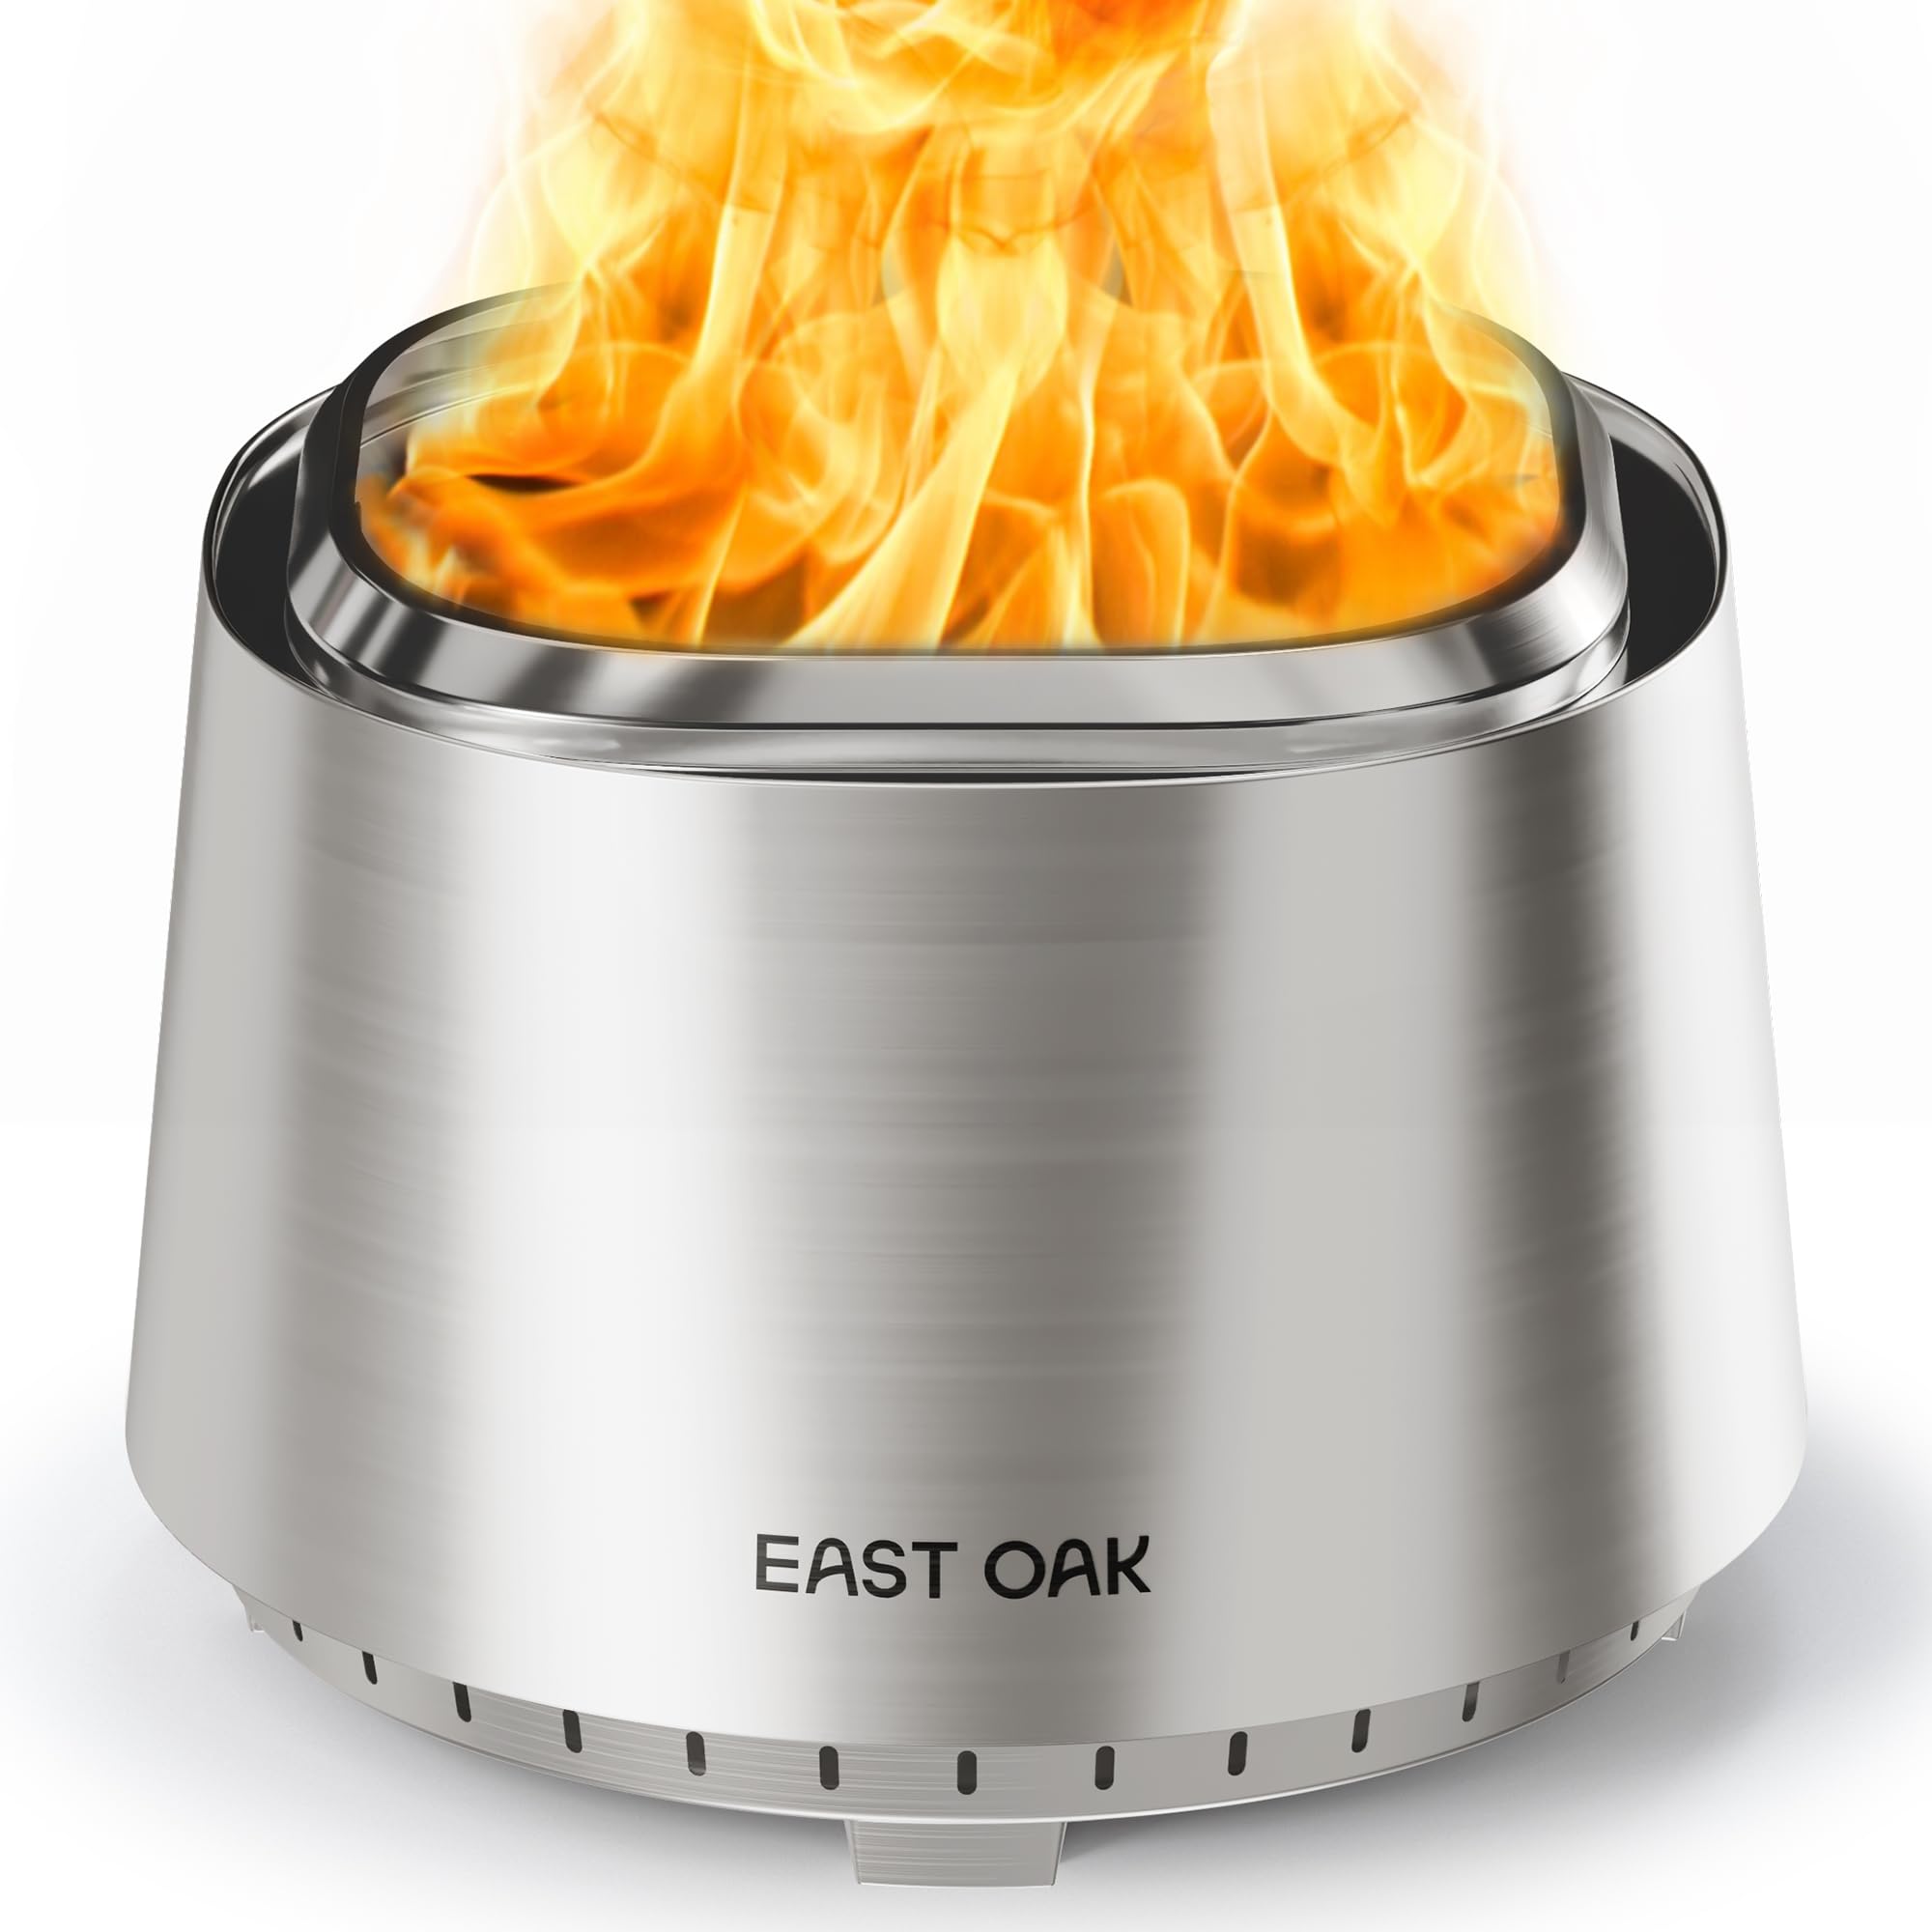 EAST OAK Smokeless Fire Pit 21'', Silver $144.16